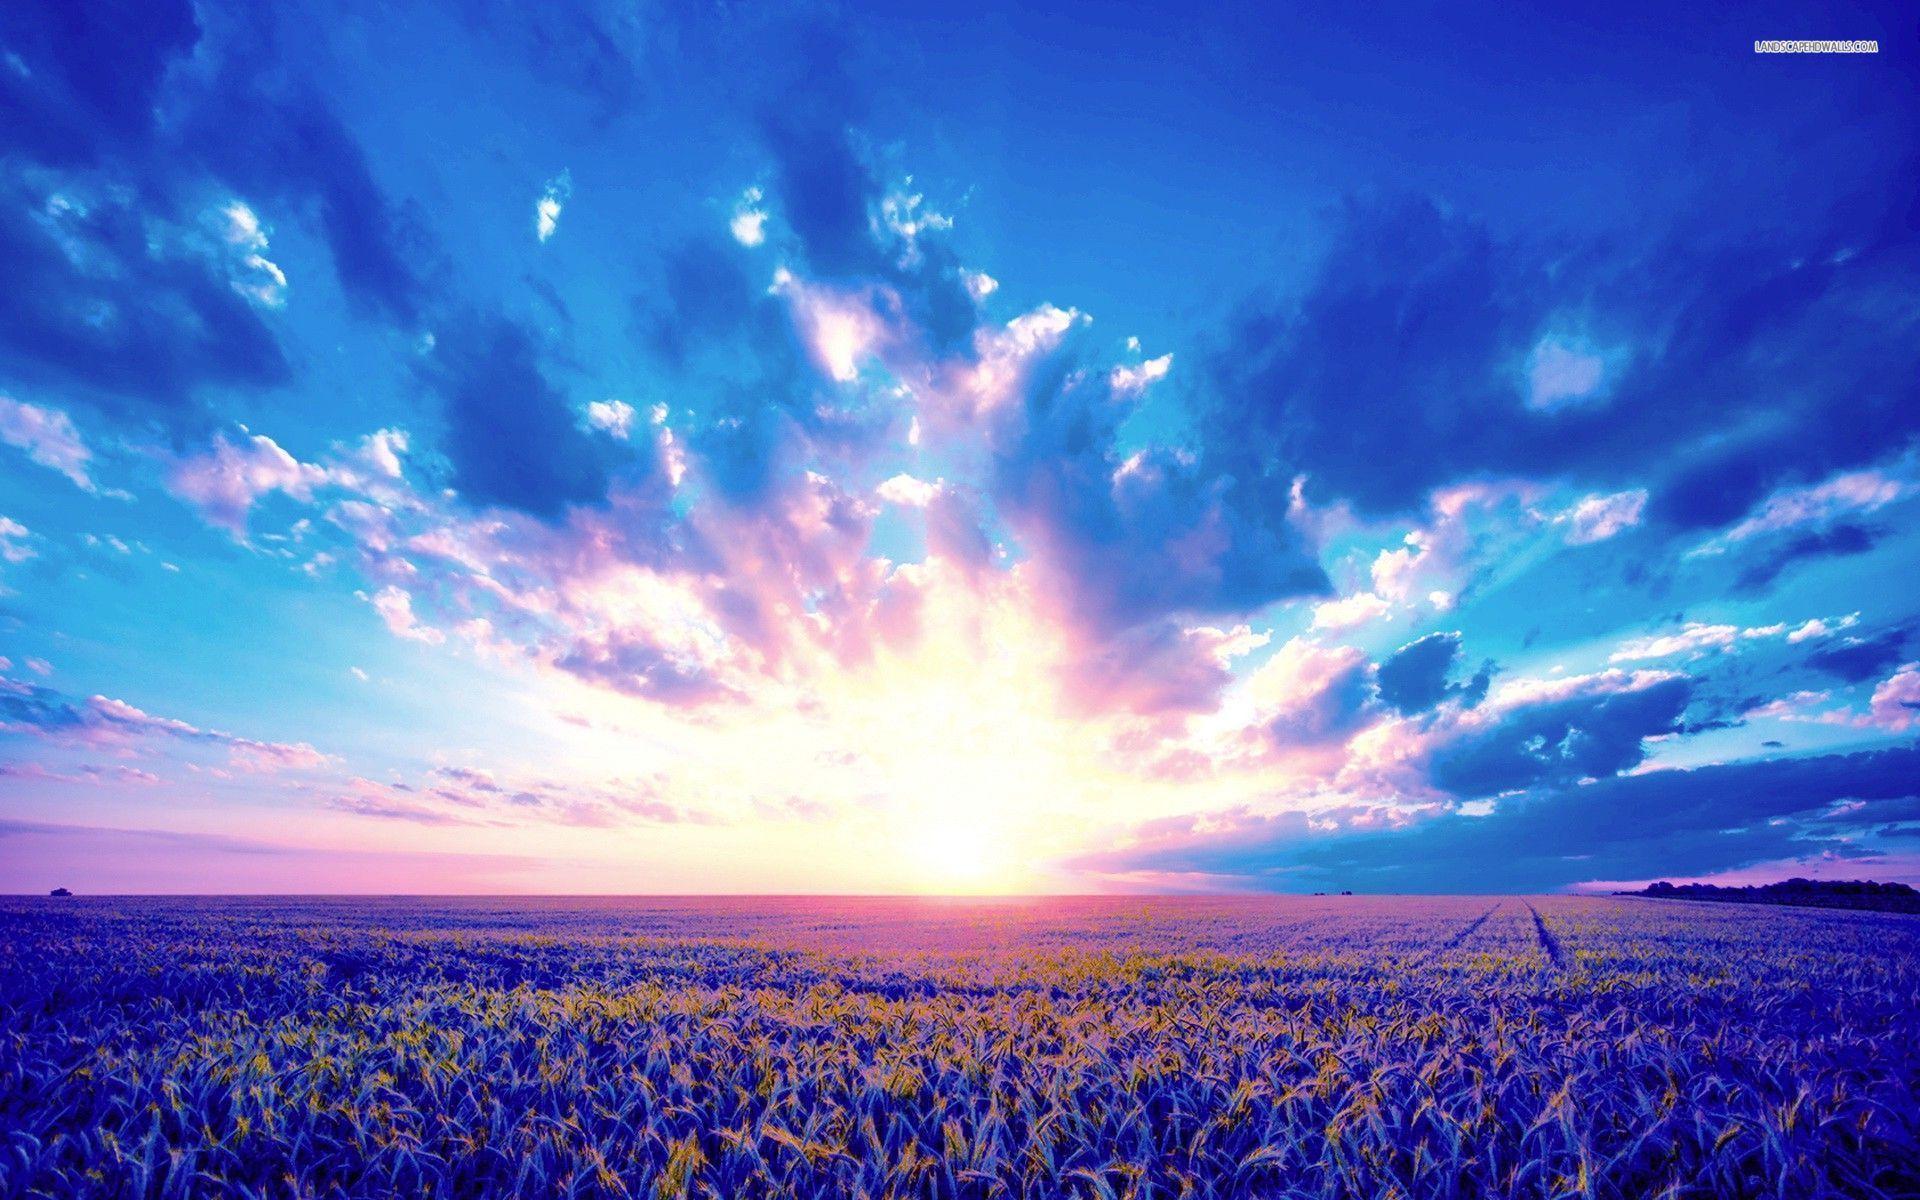 Wheat Field & Purple Sunrise wallpaper. Wheat Field & Purple Sunrise